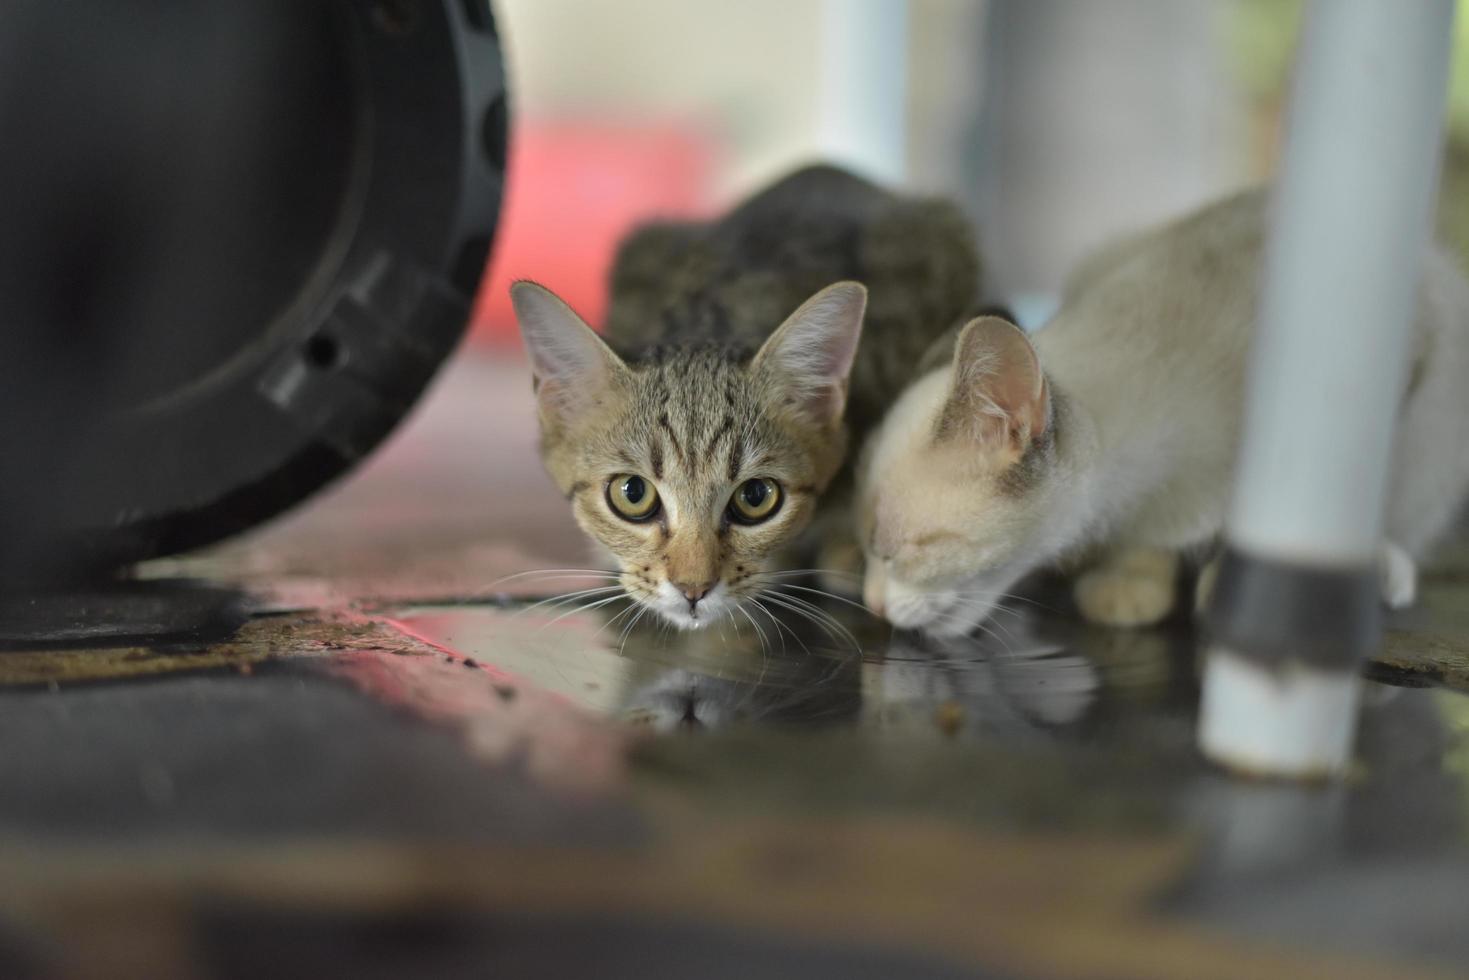 due gattini che bevono acqua sul pavimento foto